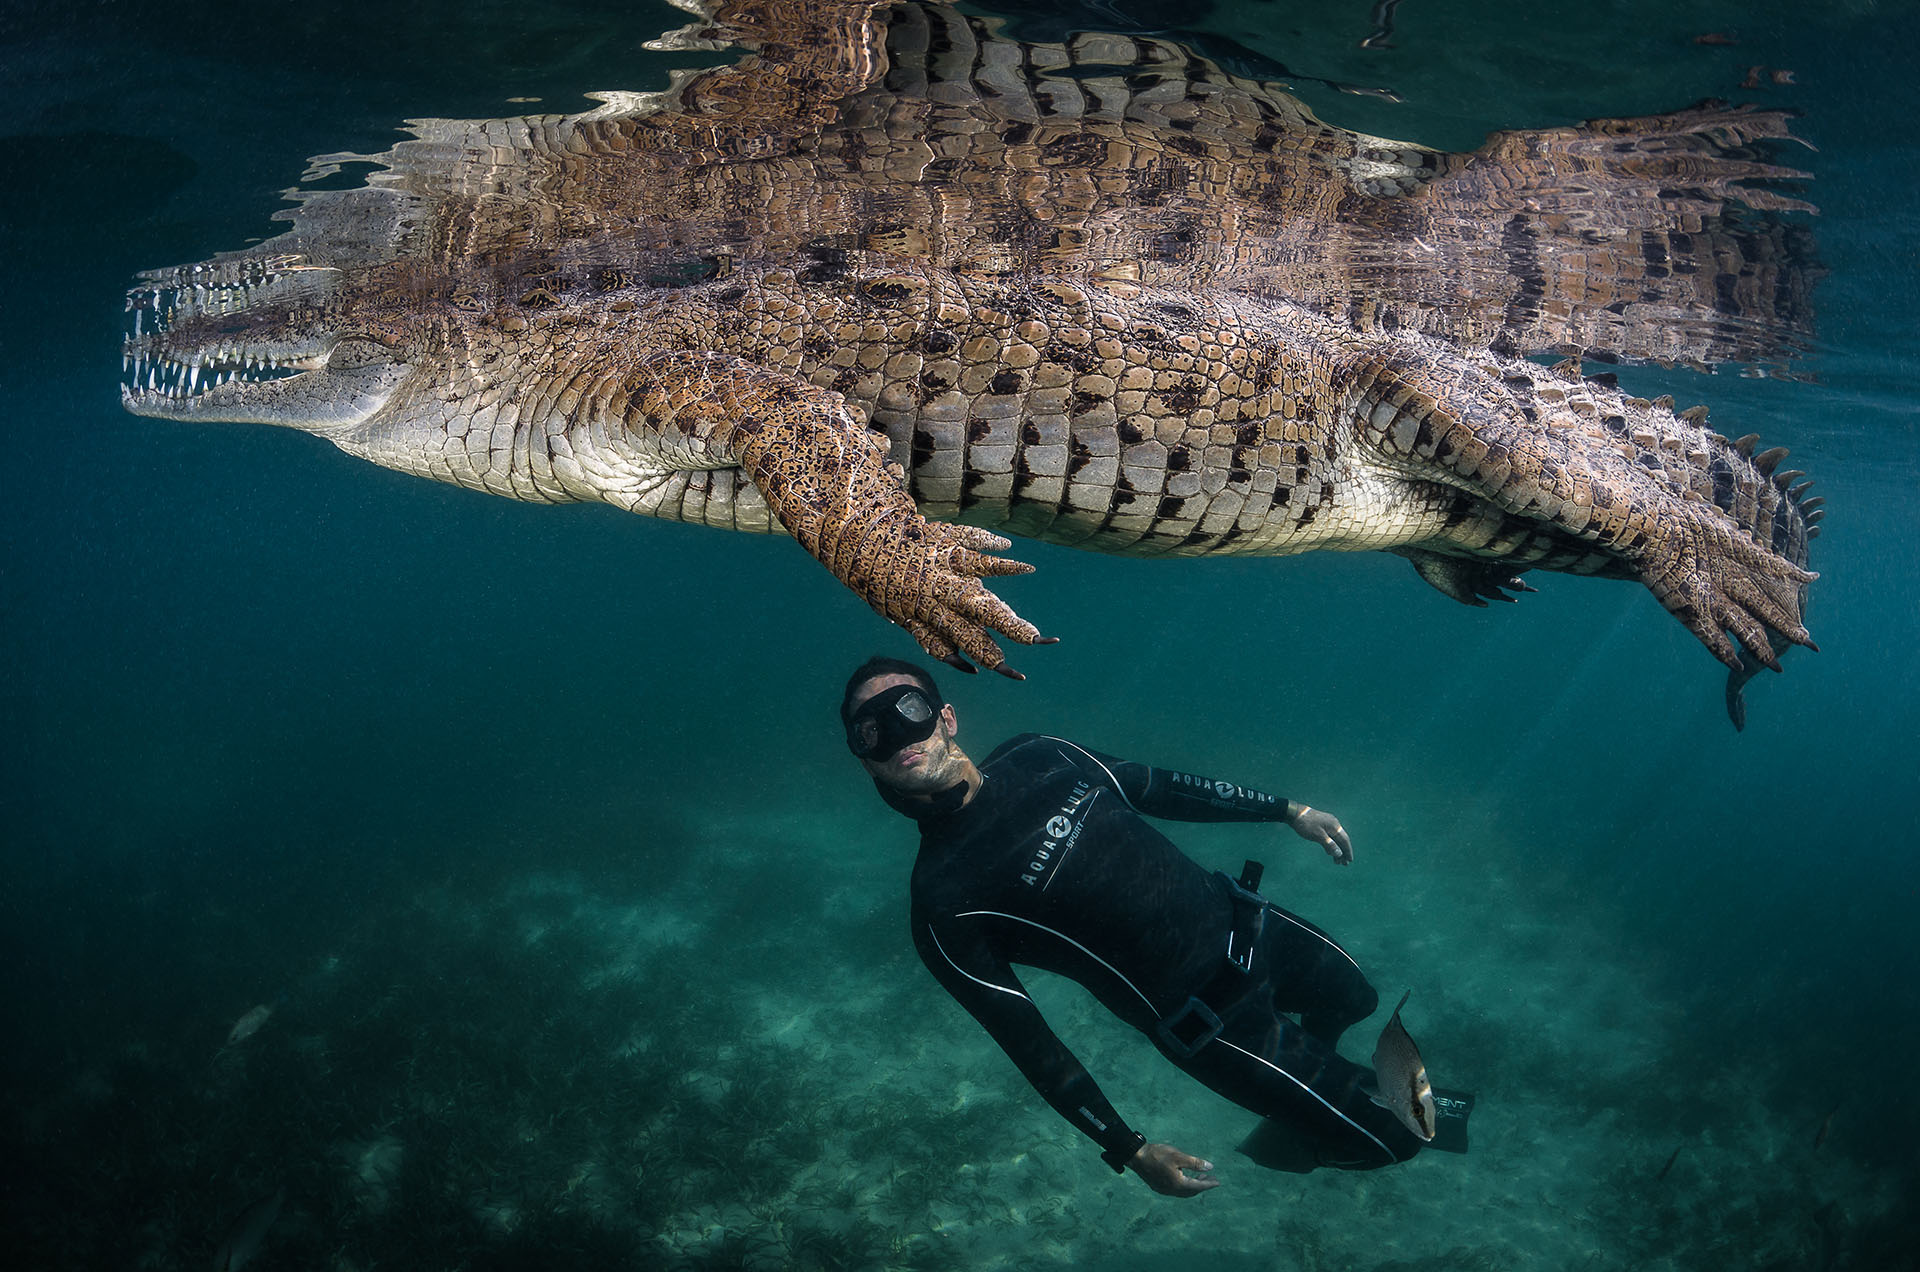 Le crocodile de Cuba en danger critique d’extinction